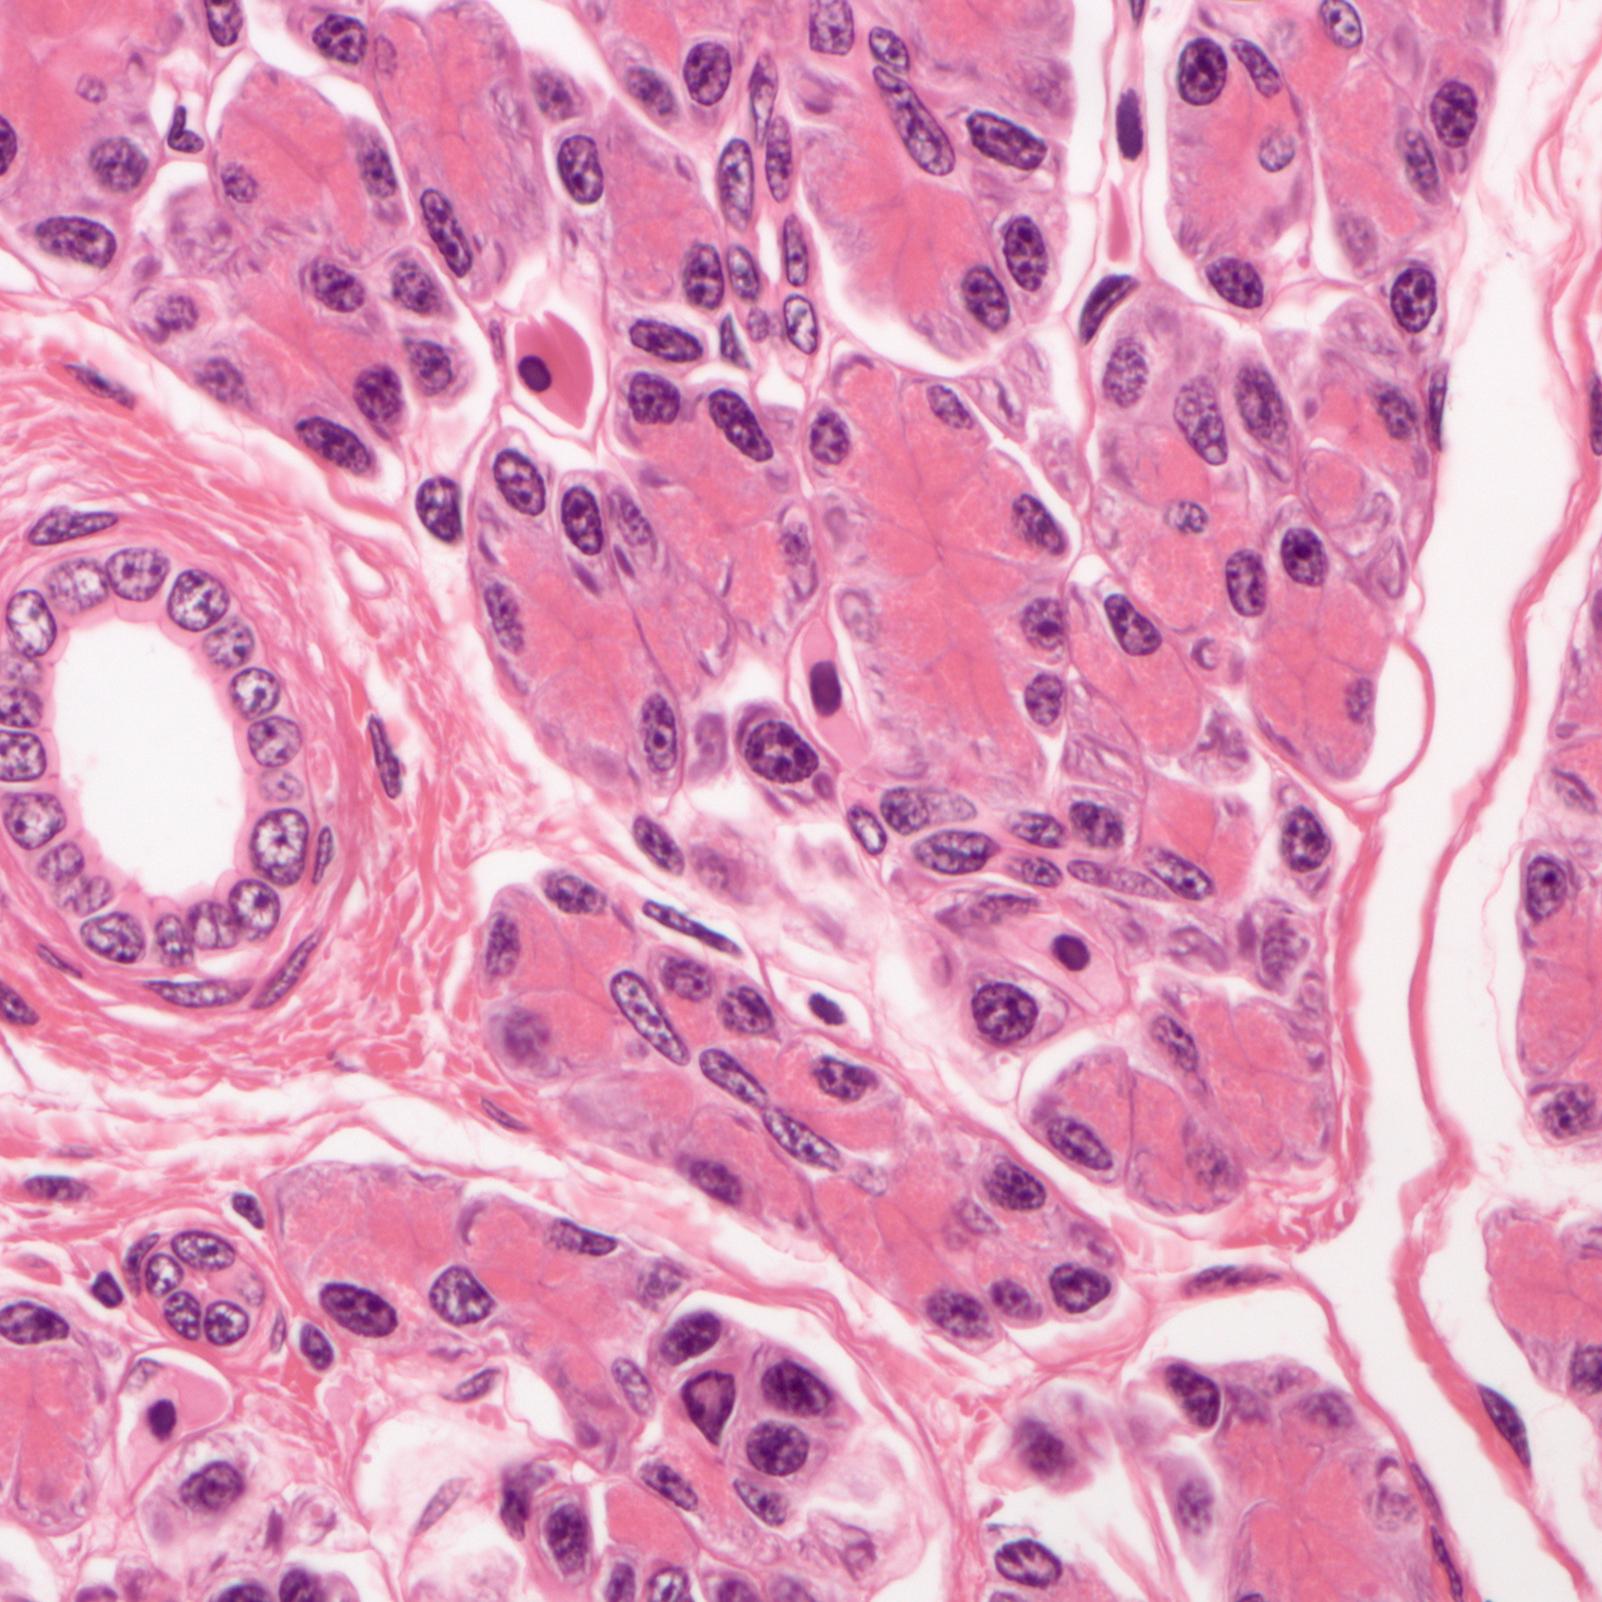 Hígado de Amphiuma en campo claro. Tinción HE, imagen captada con ZEISS Axio Imager, objetivo: EC Plan-NEOFLUAR 20×/0,50